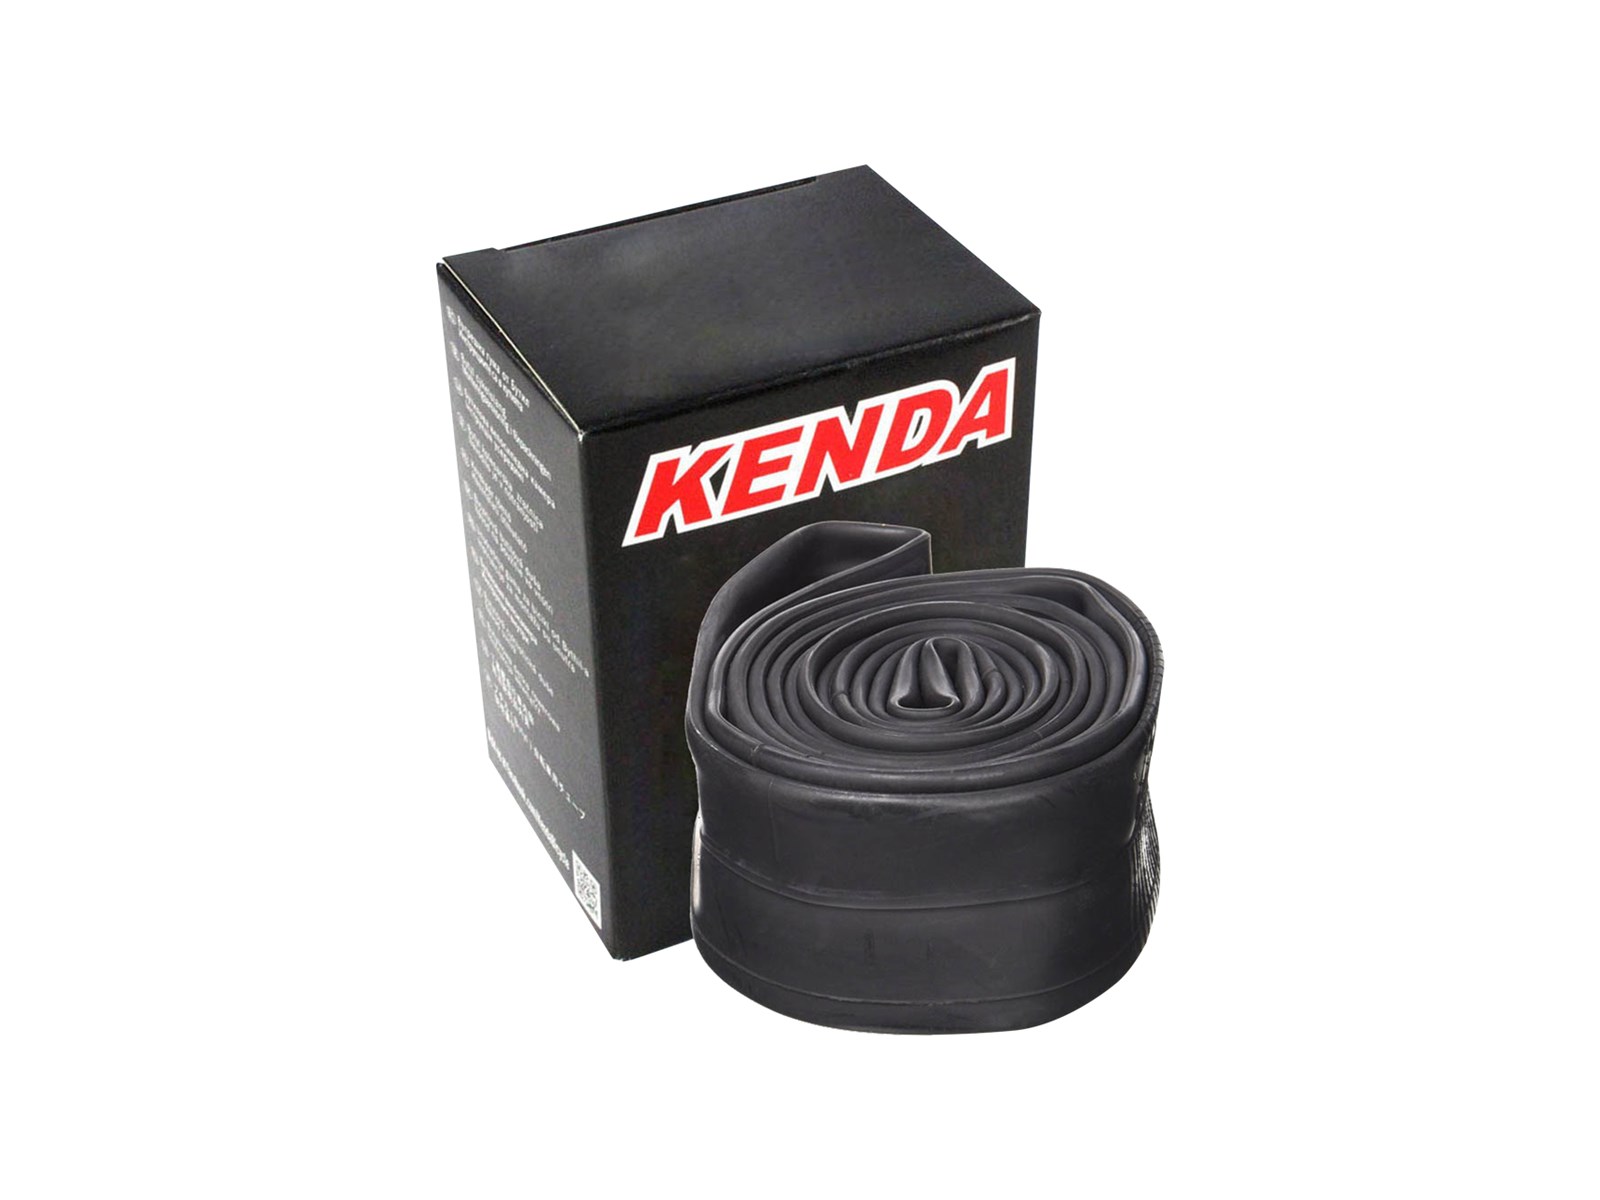 UN.GUMA 700x35/43C Dunlop V. kenda